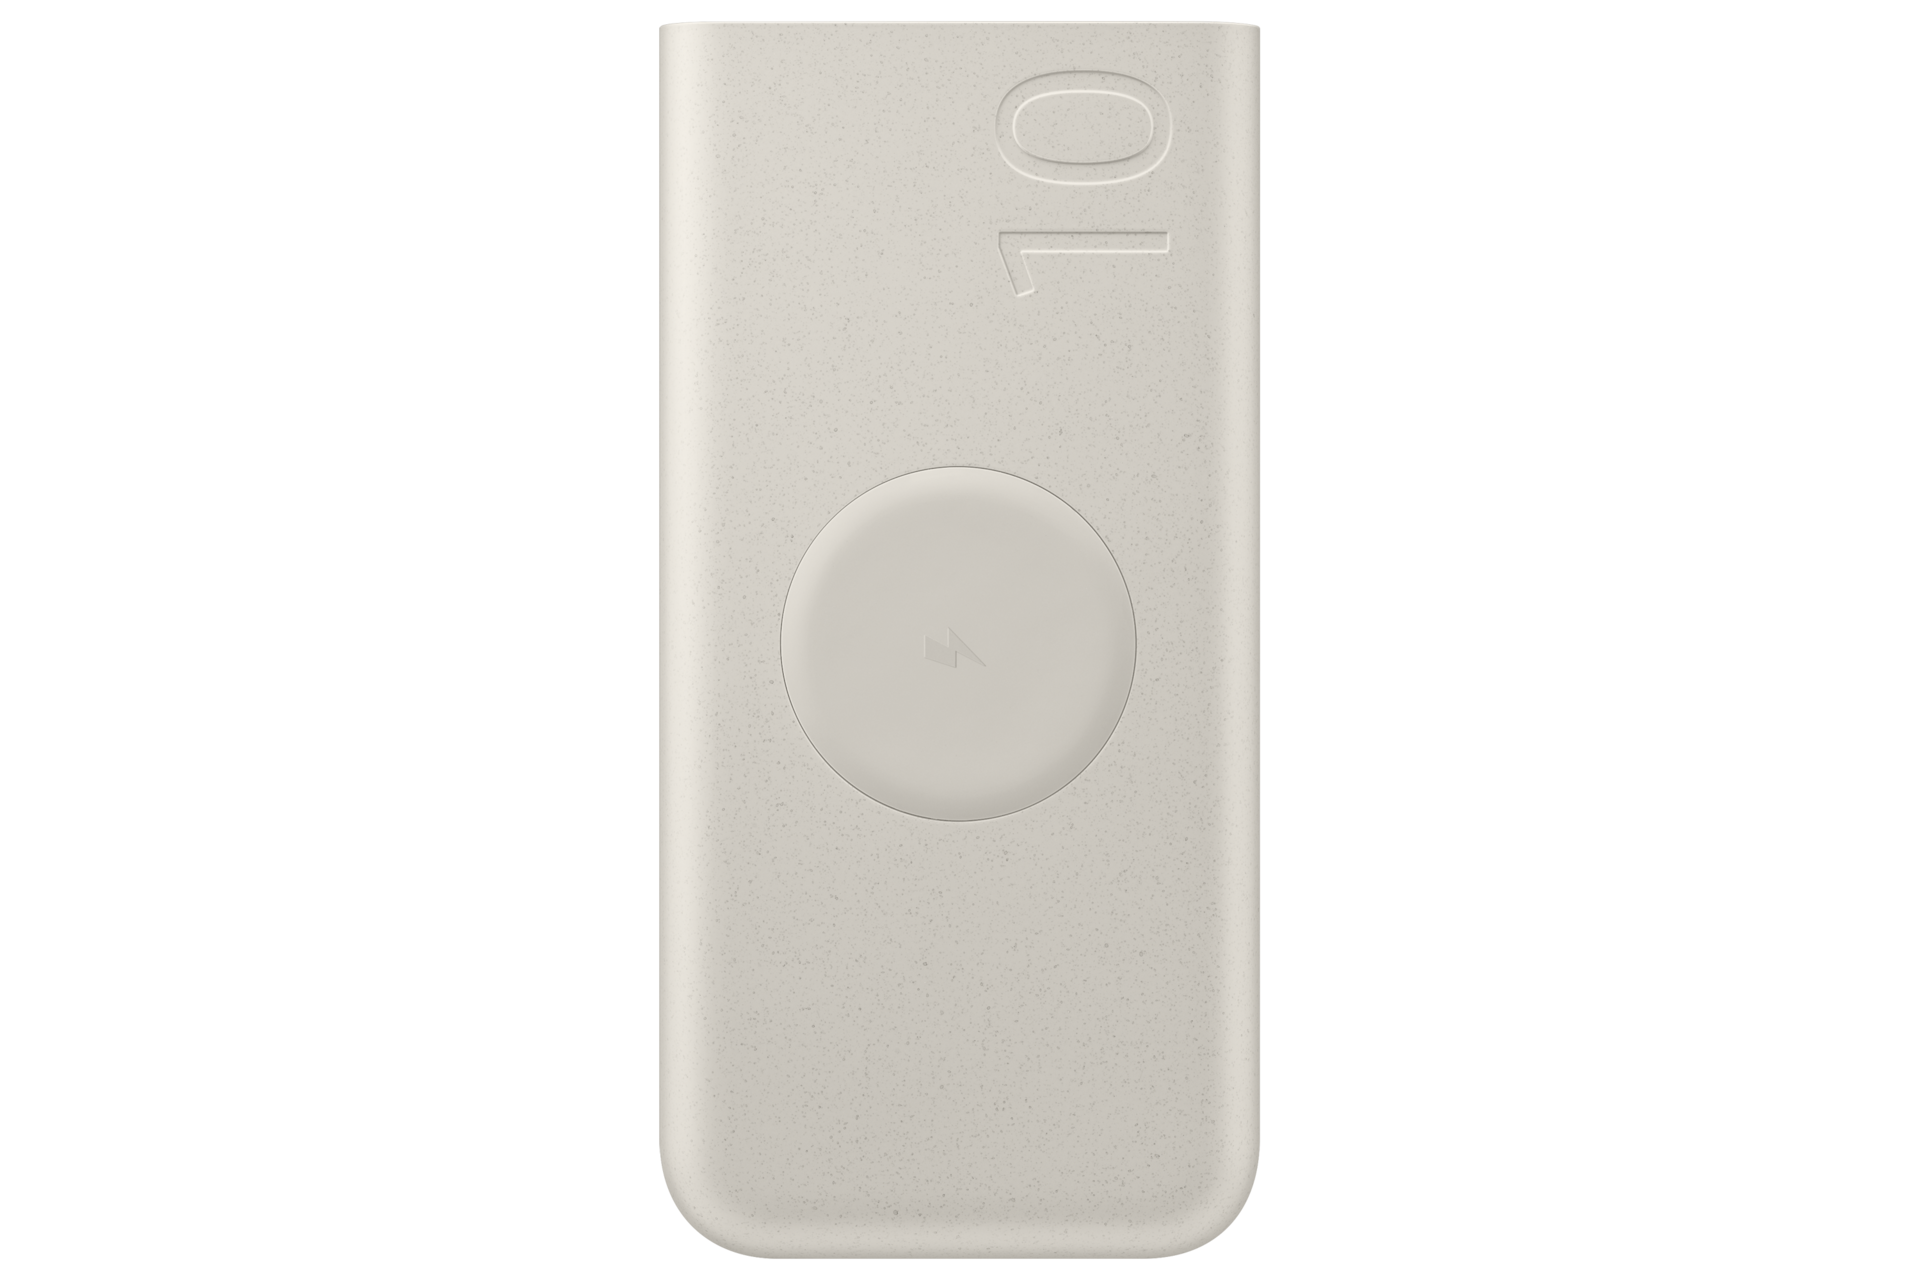 Samsung 10Ah Wireless Battery Pack (SFC 25W), Beige